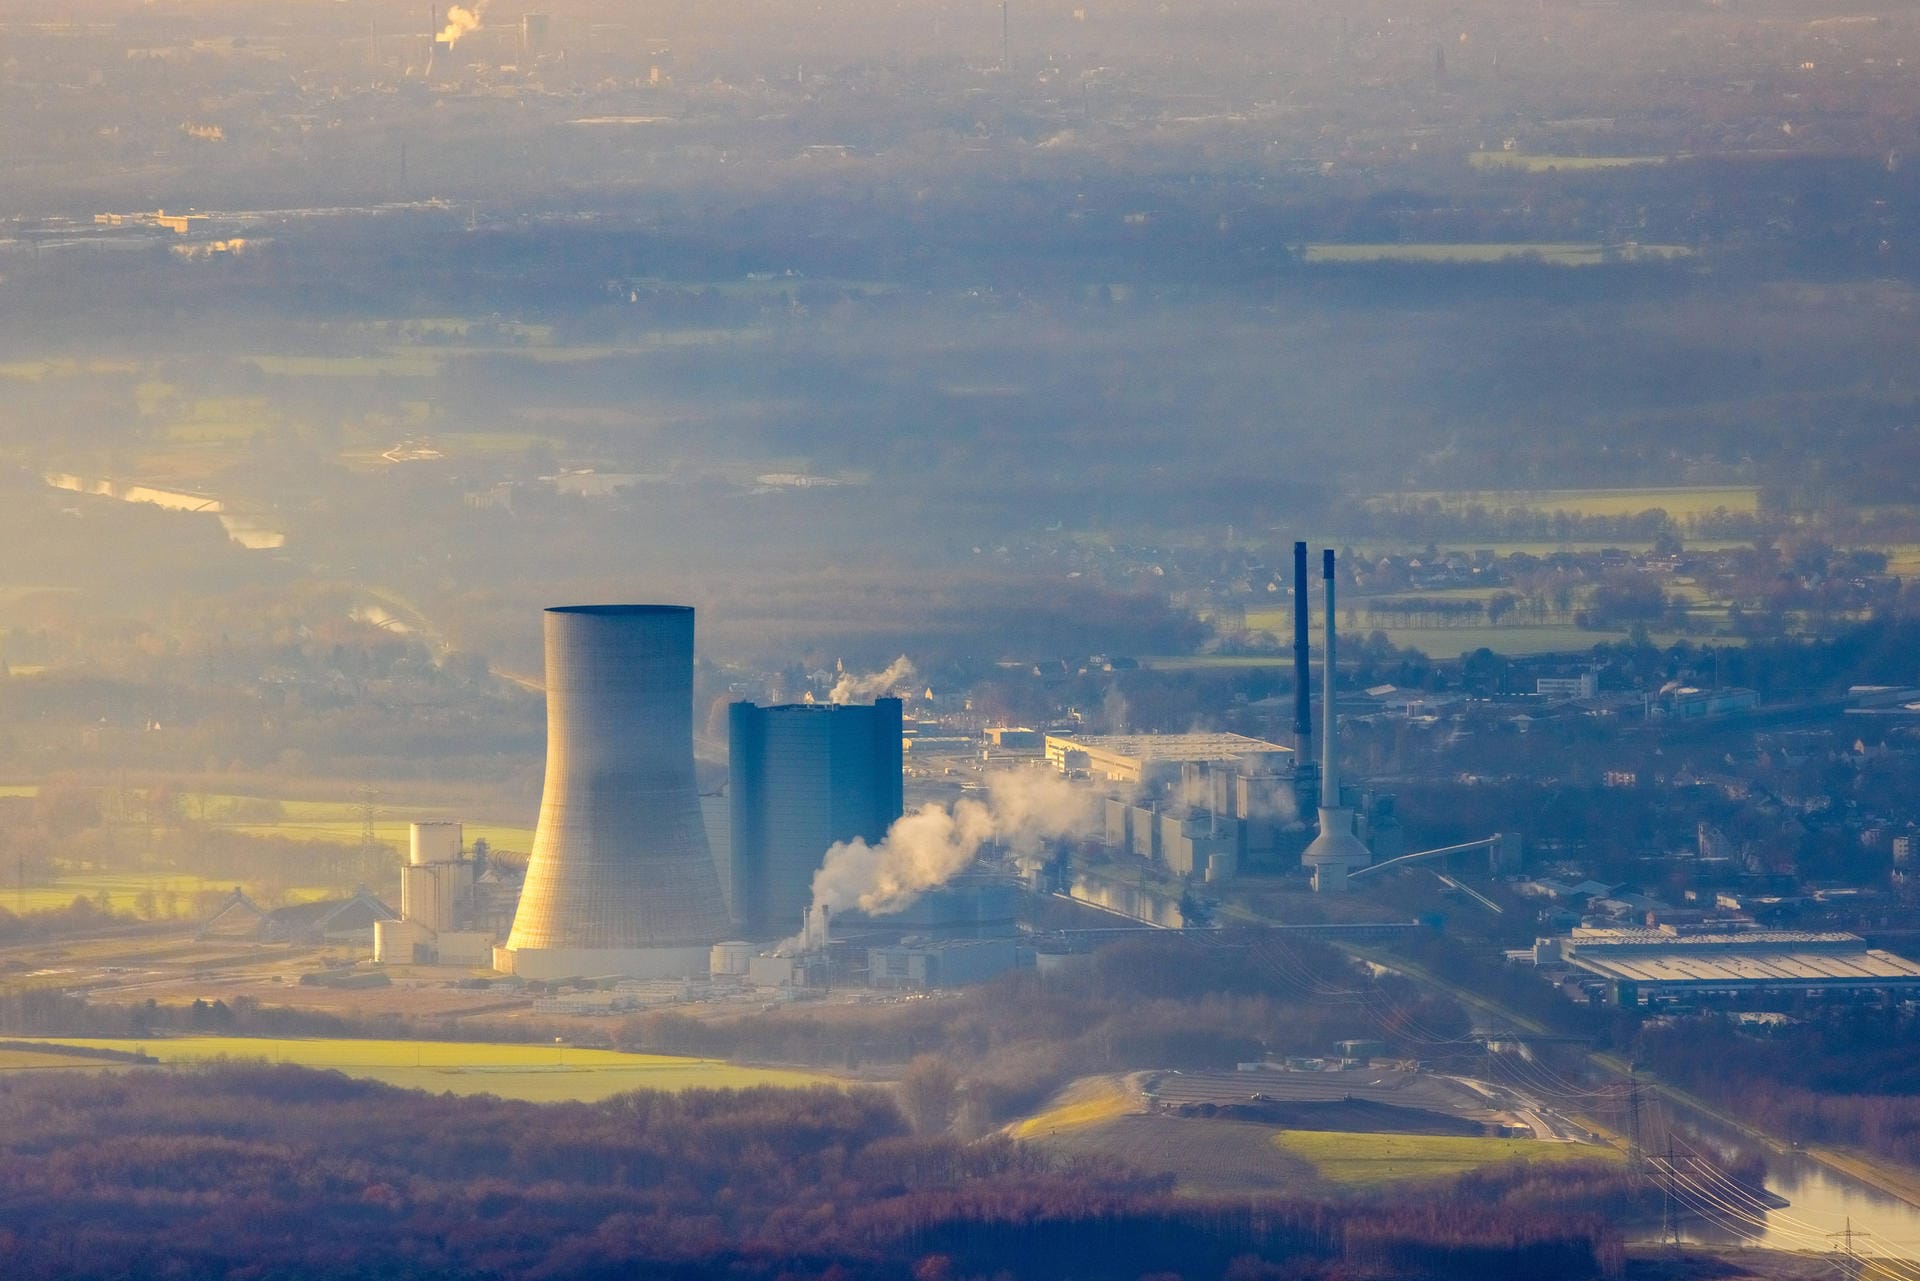 Ein wichtiger Schritt für eine sauberere Energieversorgung: Weltweit ist in diesem Jahr erstmals die Zahl der Kohlekraftwerke zurückgegangen. Besonders in Europa zeigt sich eine Trendwende.